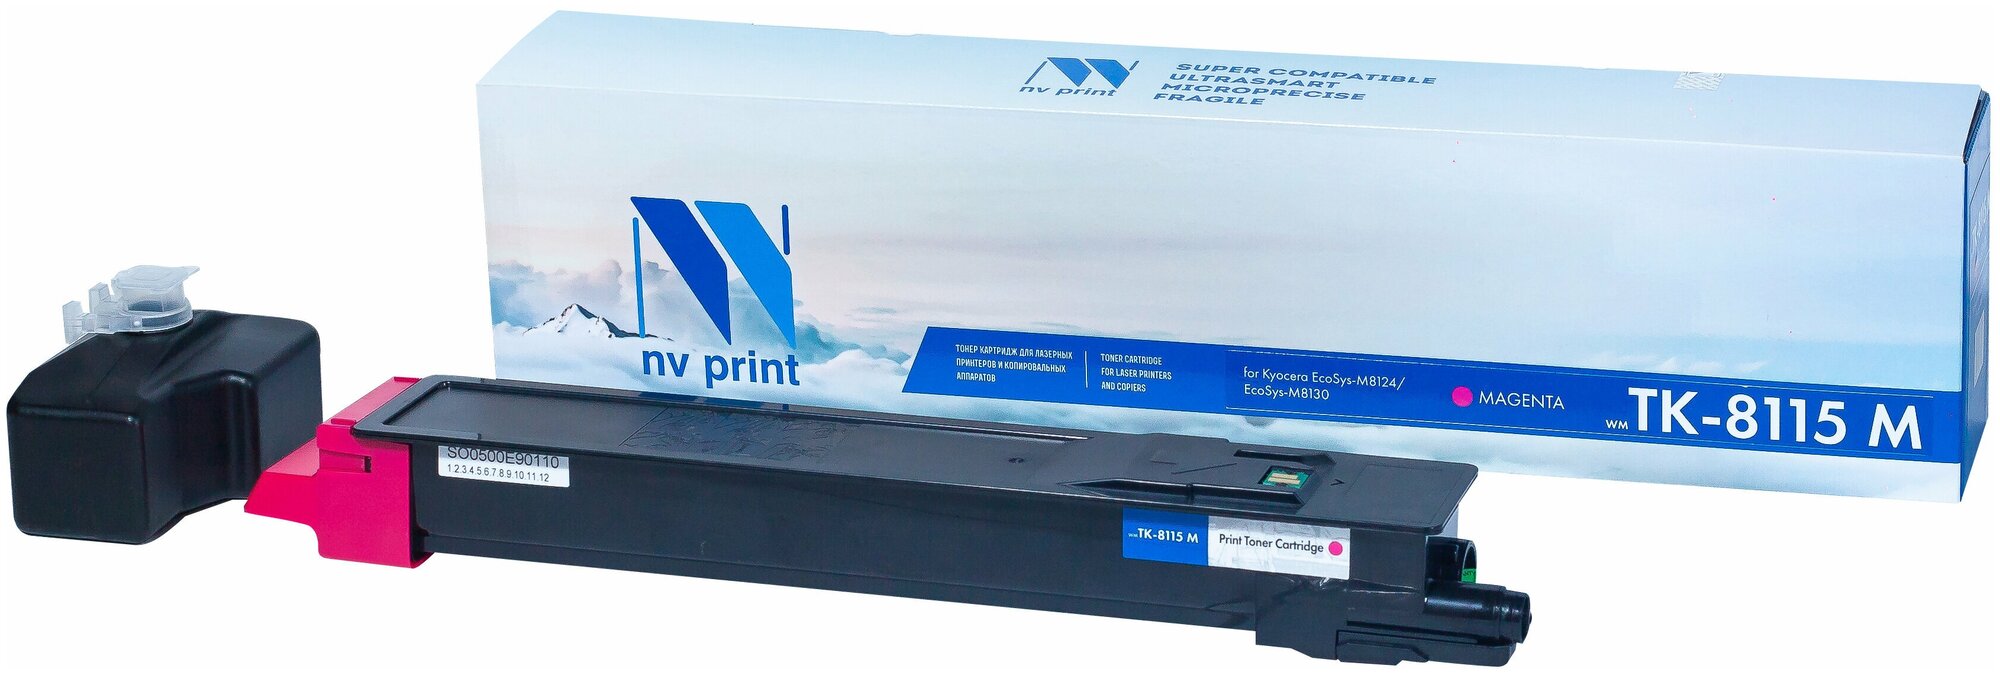 Картридж для принтера NV Print NV-TK-8115 Magenta, для Kyocera EcoSys-M8124/EcoSys-M8130, совместимый